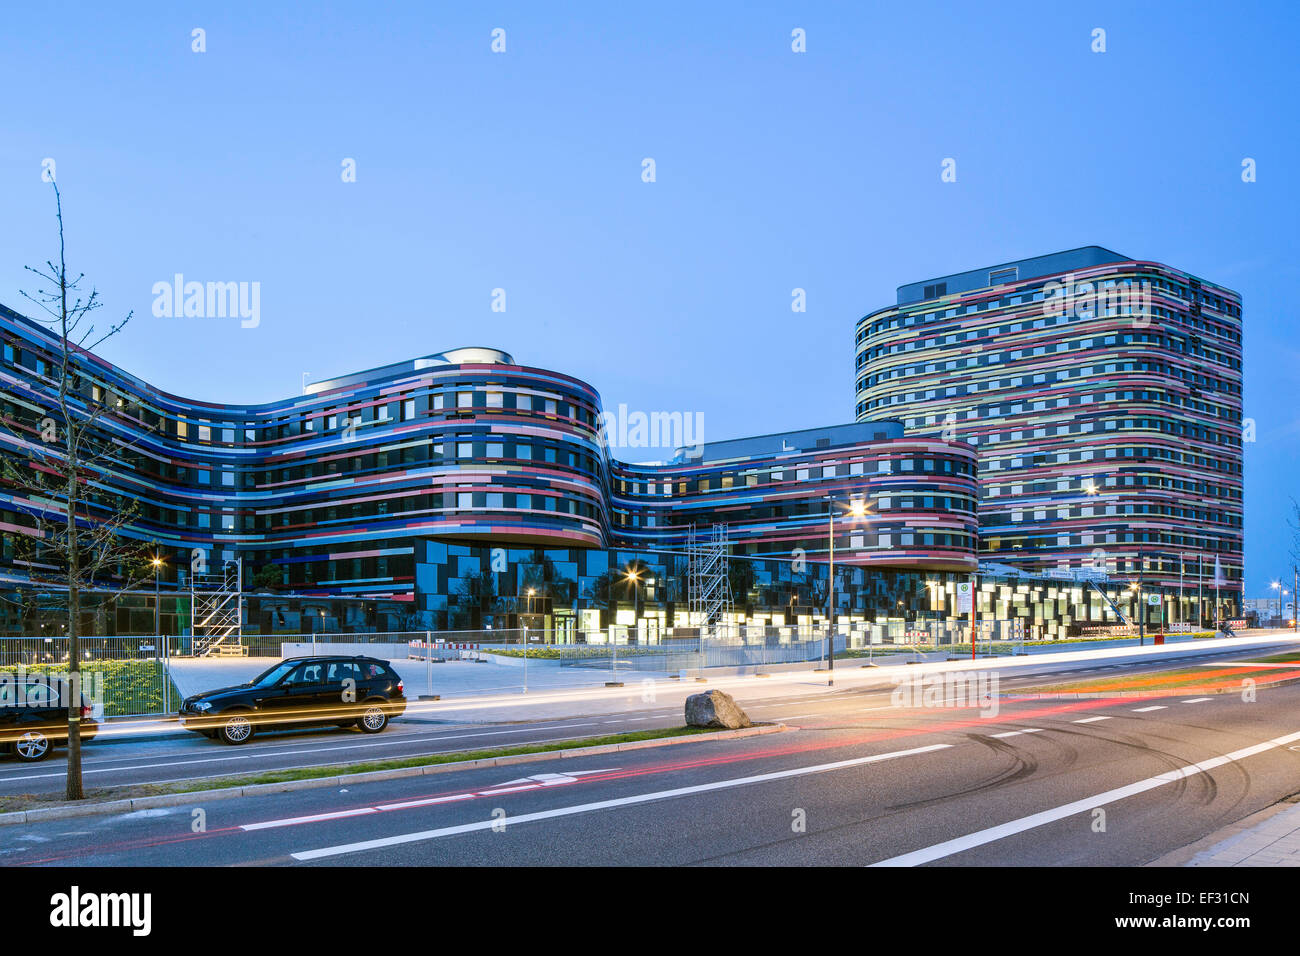 Ministerio de Desarrollo Urbano y Medio Ambiente de la Ciudad Libre y Hanseática de Hamburgo, arquitectos Sauerbruch y Hutton, un Foto de stock